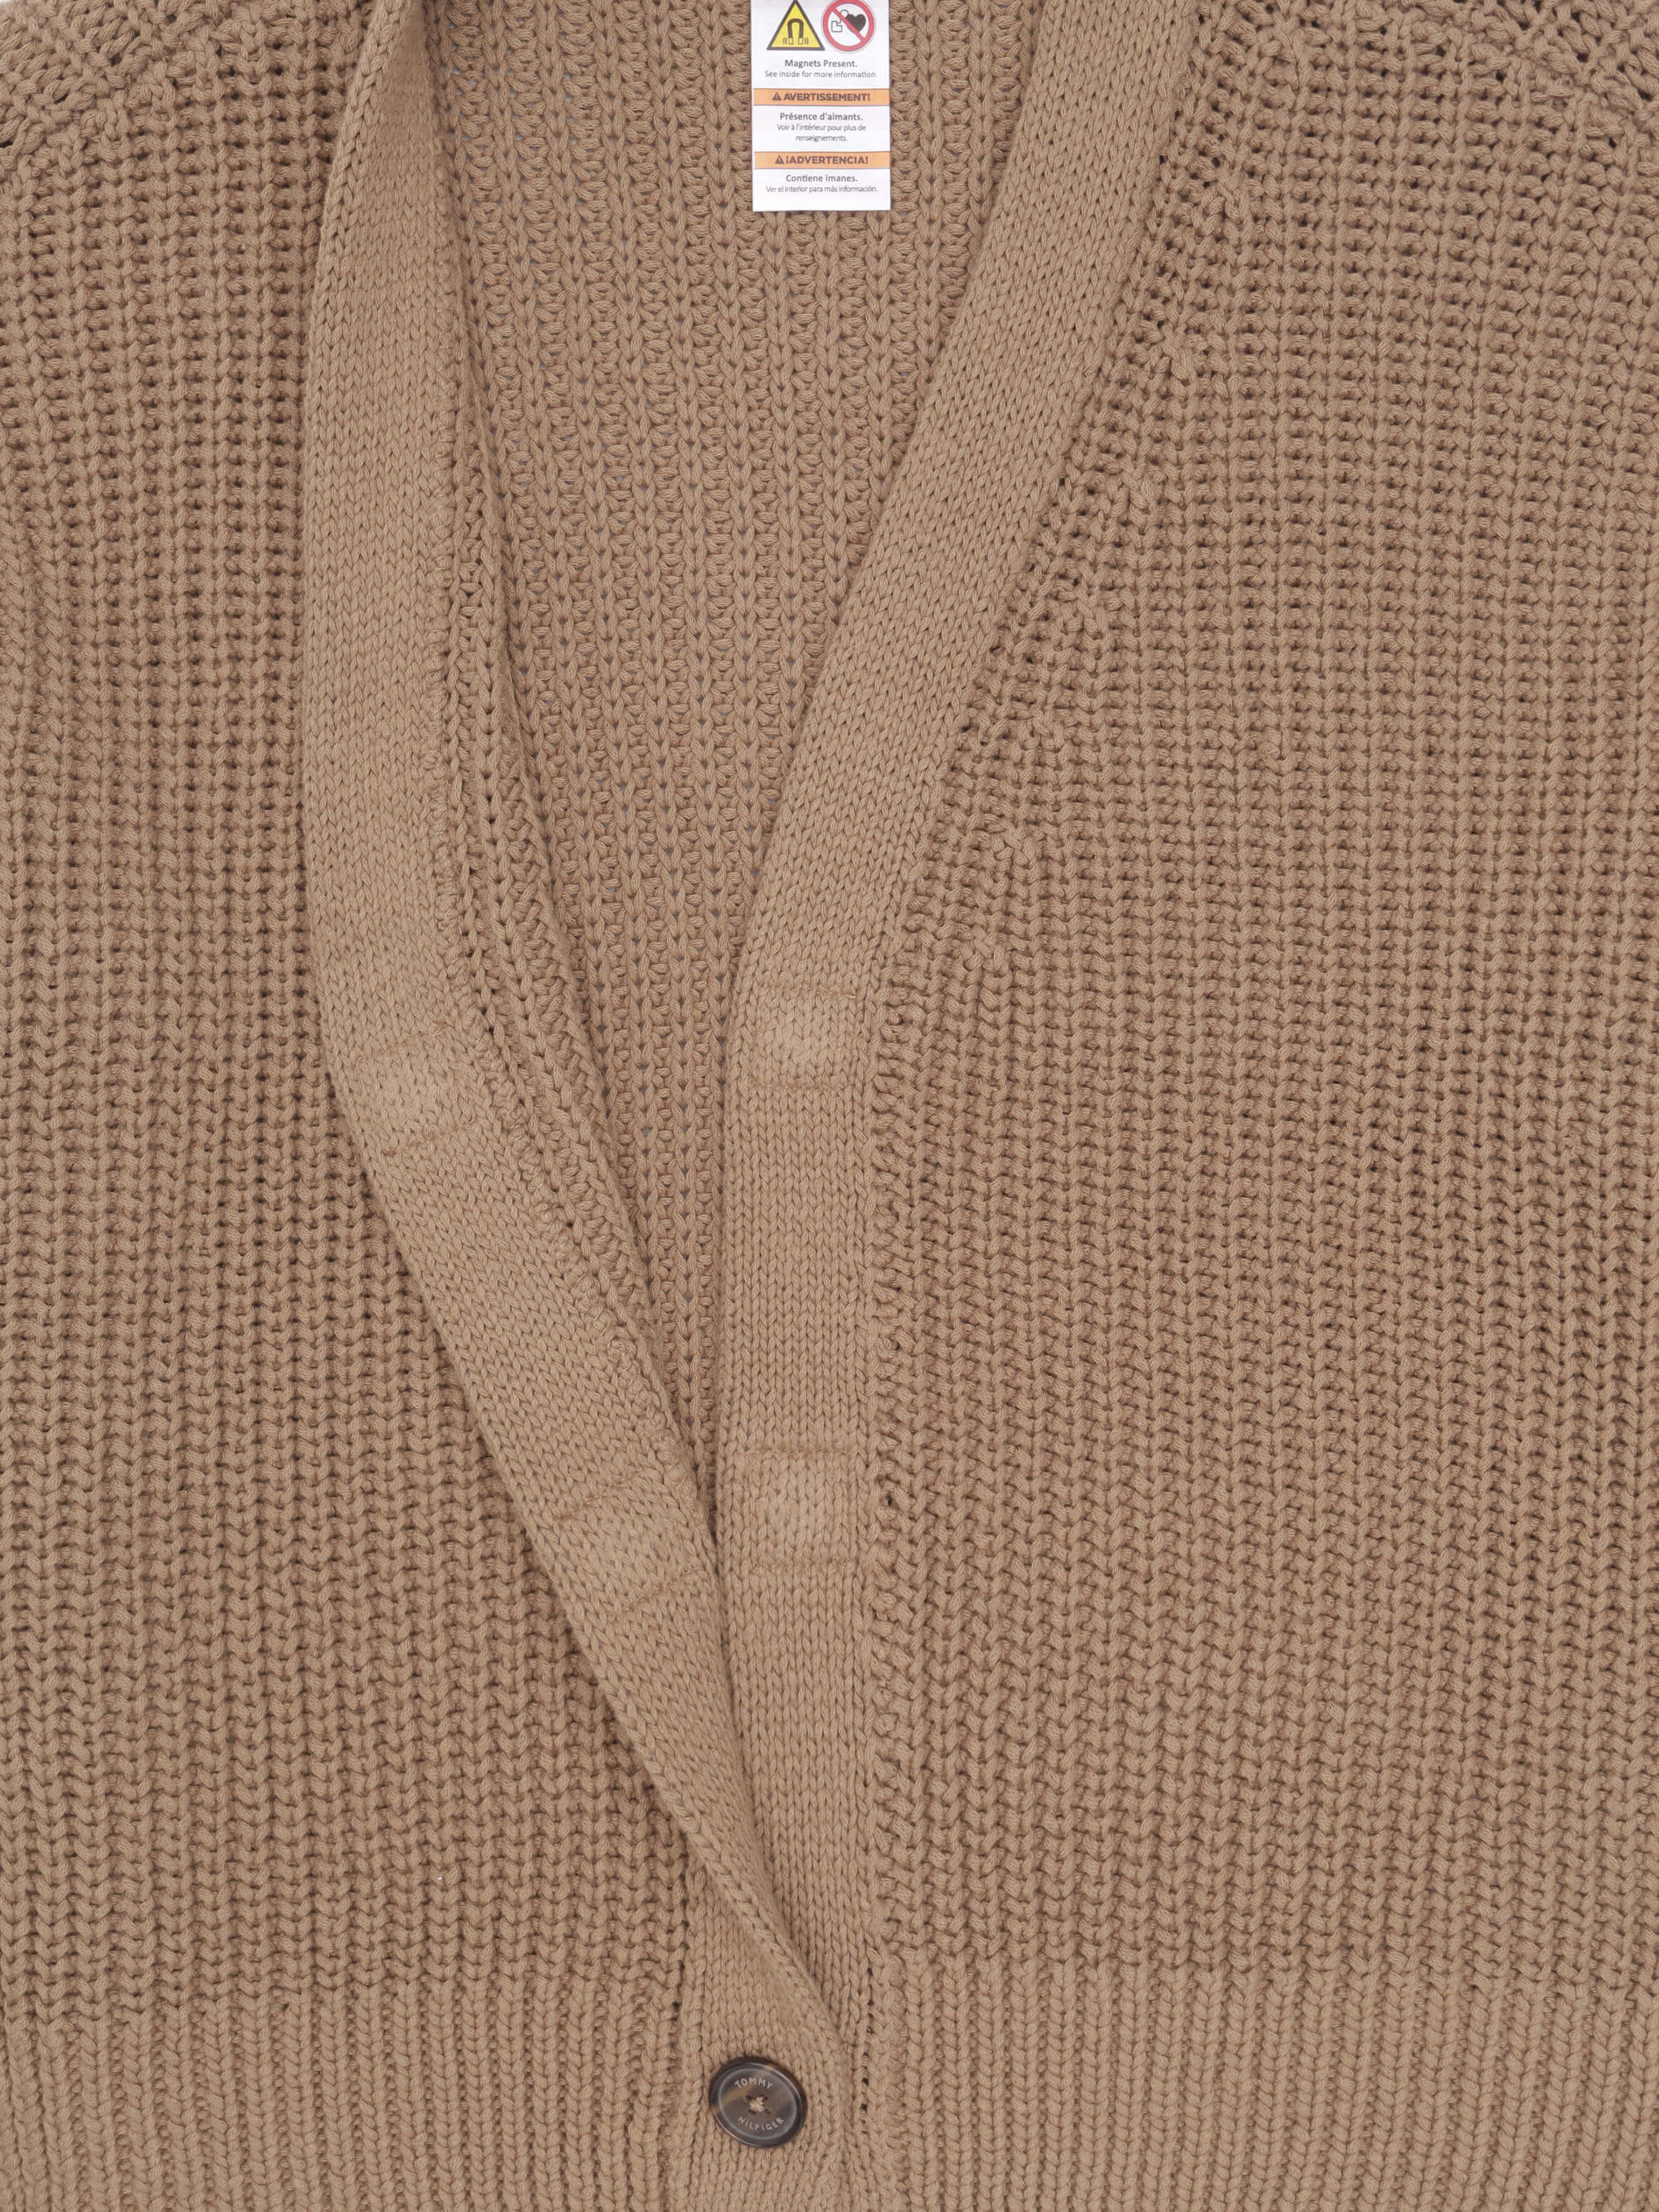 Suéter con acabado tejido de mujer Tommy Hilfiger